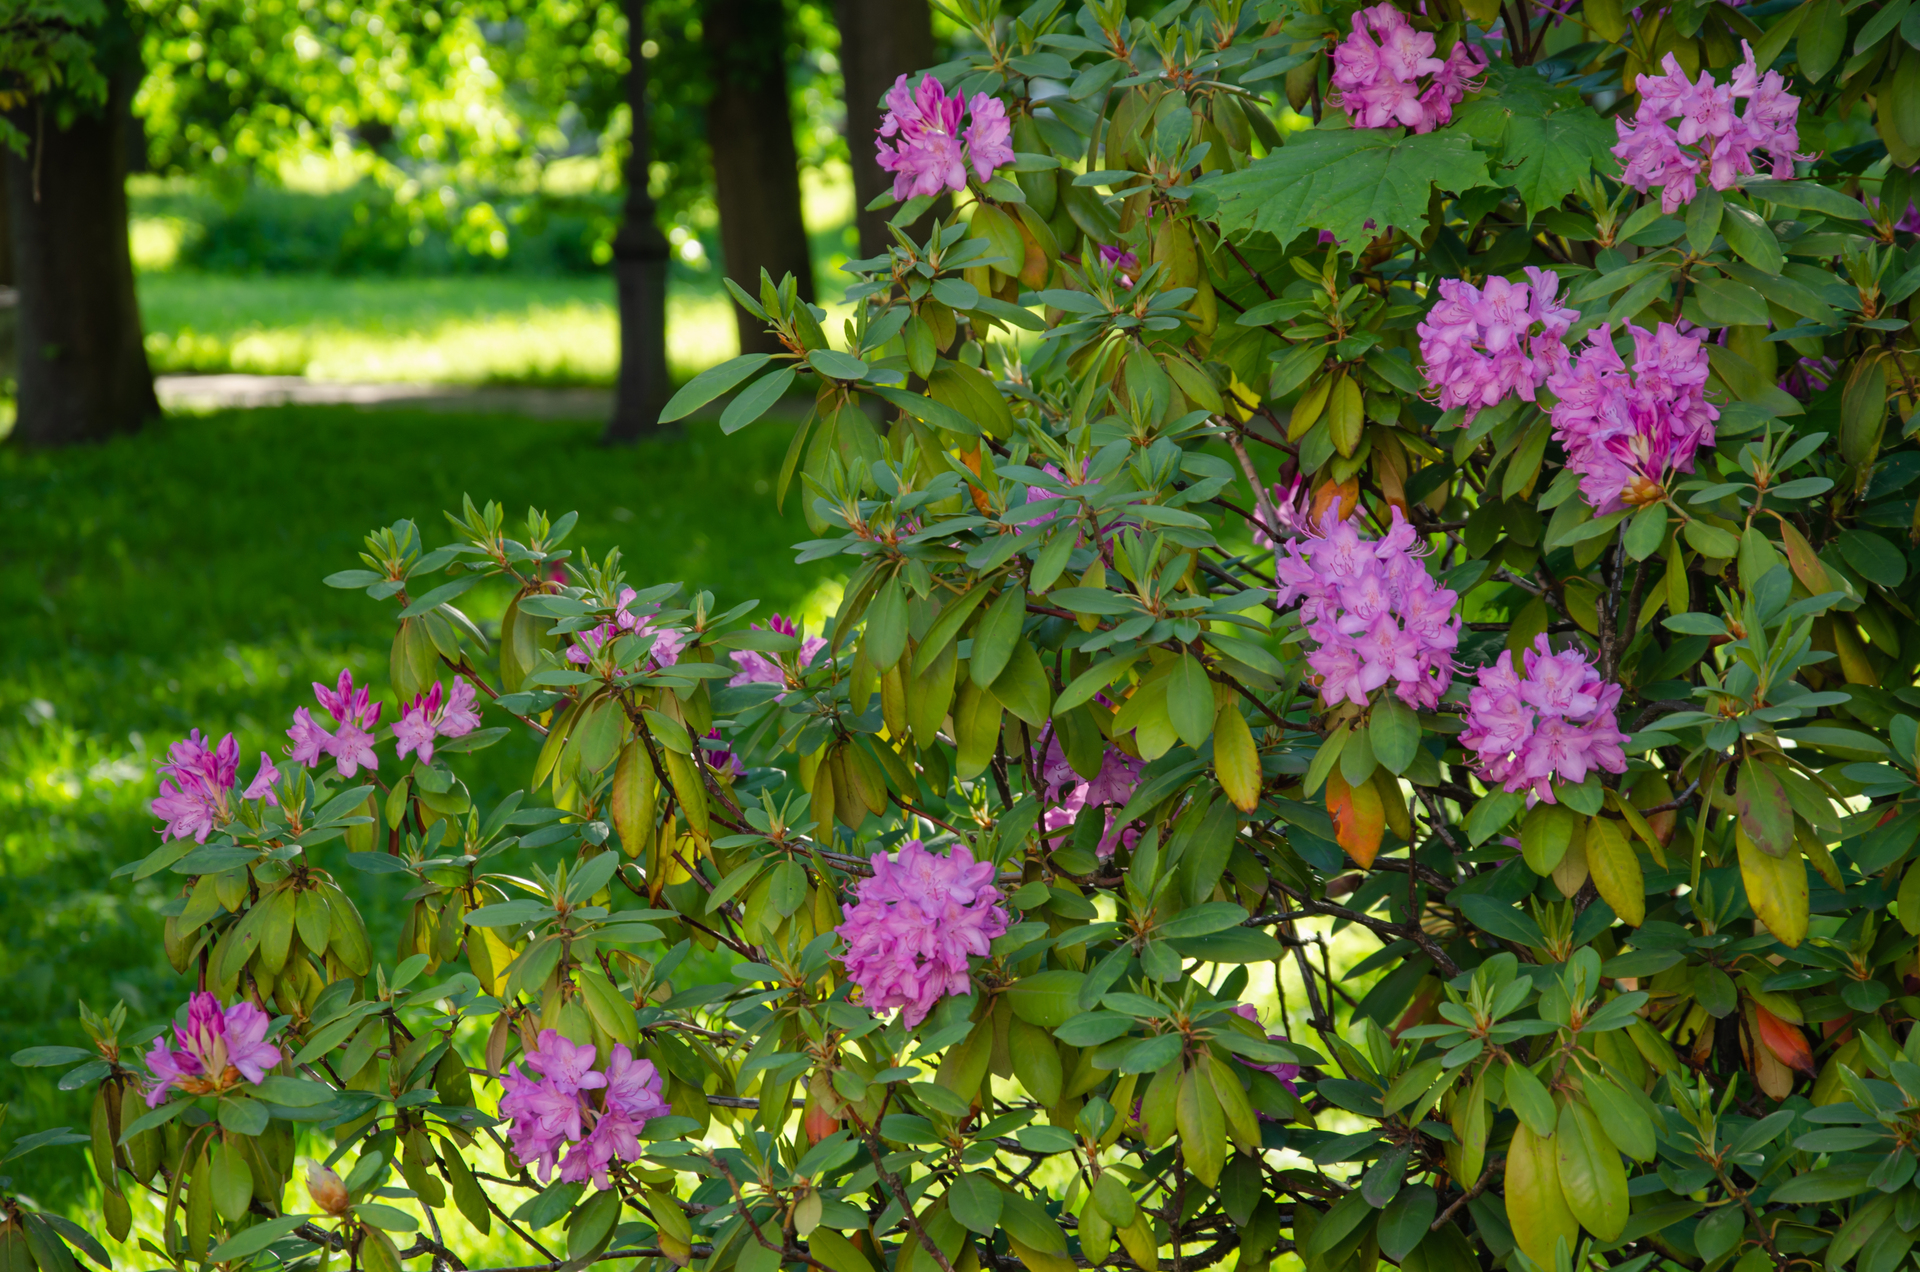 Obraz przedstawia uroczy rododendron, który jest dumnie umieszczony w kolorowym ogrodzie. Jego gęste i bujne zielone liście tworzą piękne tło dla wielu kwiatów, które w pełni rozkwitają na jego gałęziach. To malownicze widoki rododendronu dodają magii i uroku temu przytulnemu ogrodowi